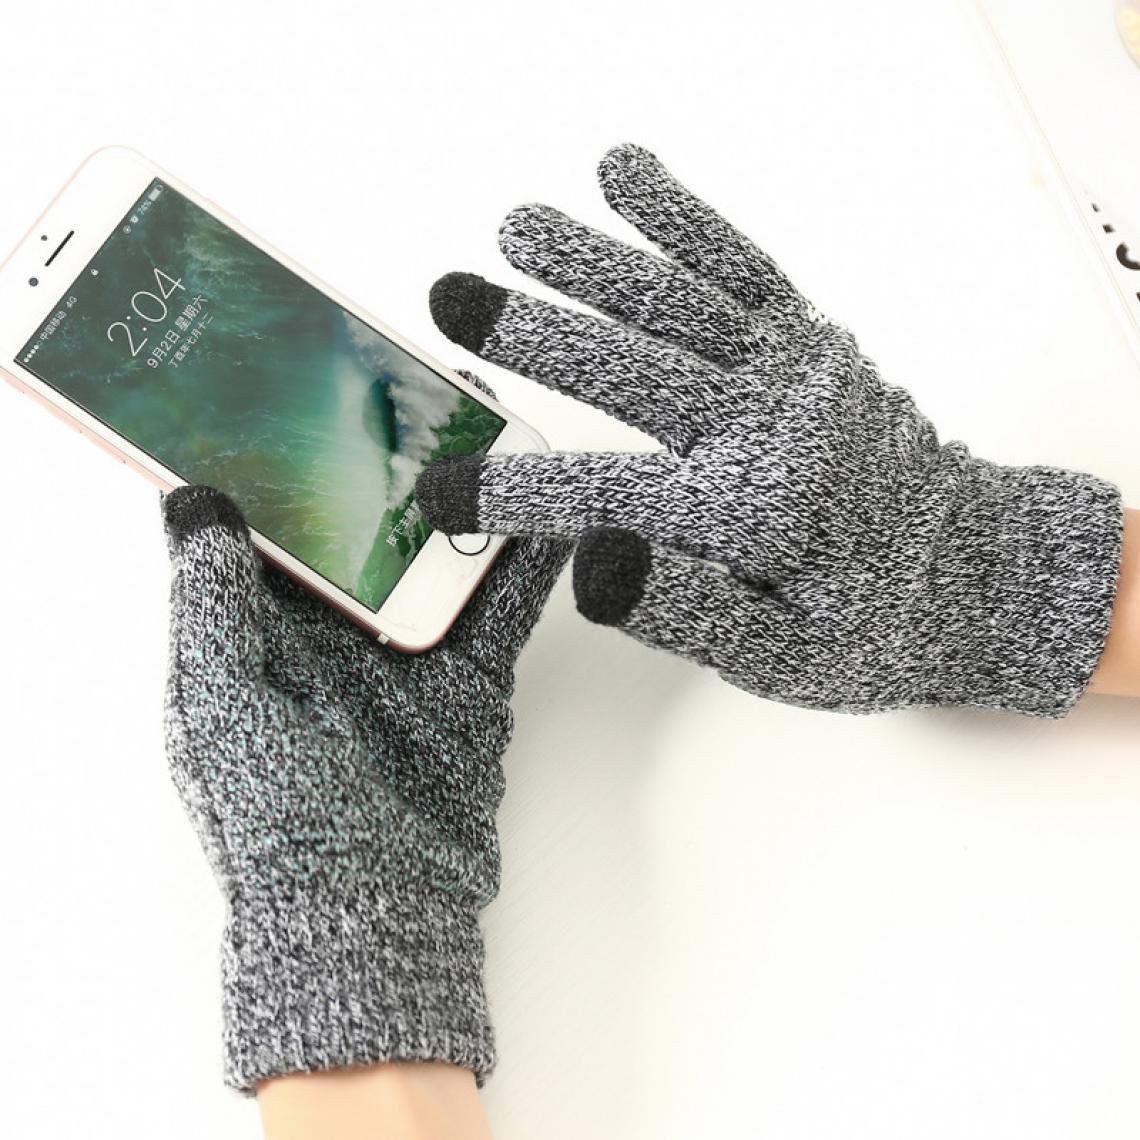 Shot - Gants Homme tactiles pour SAMSUNG Galaxy Note 9 Smartphone Taille M 3 doigts Hiver (GRIS) - Autres accessoires smartphone